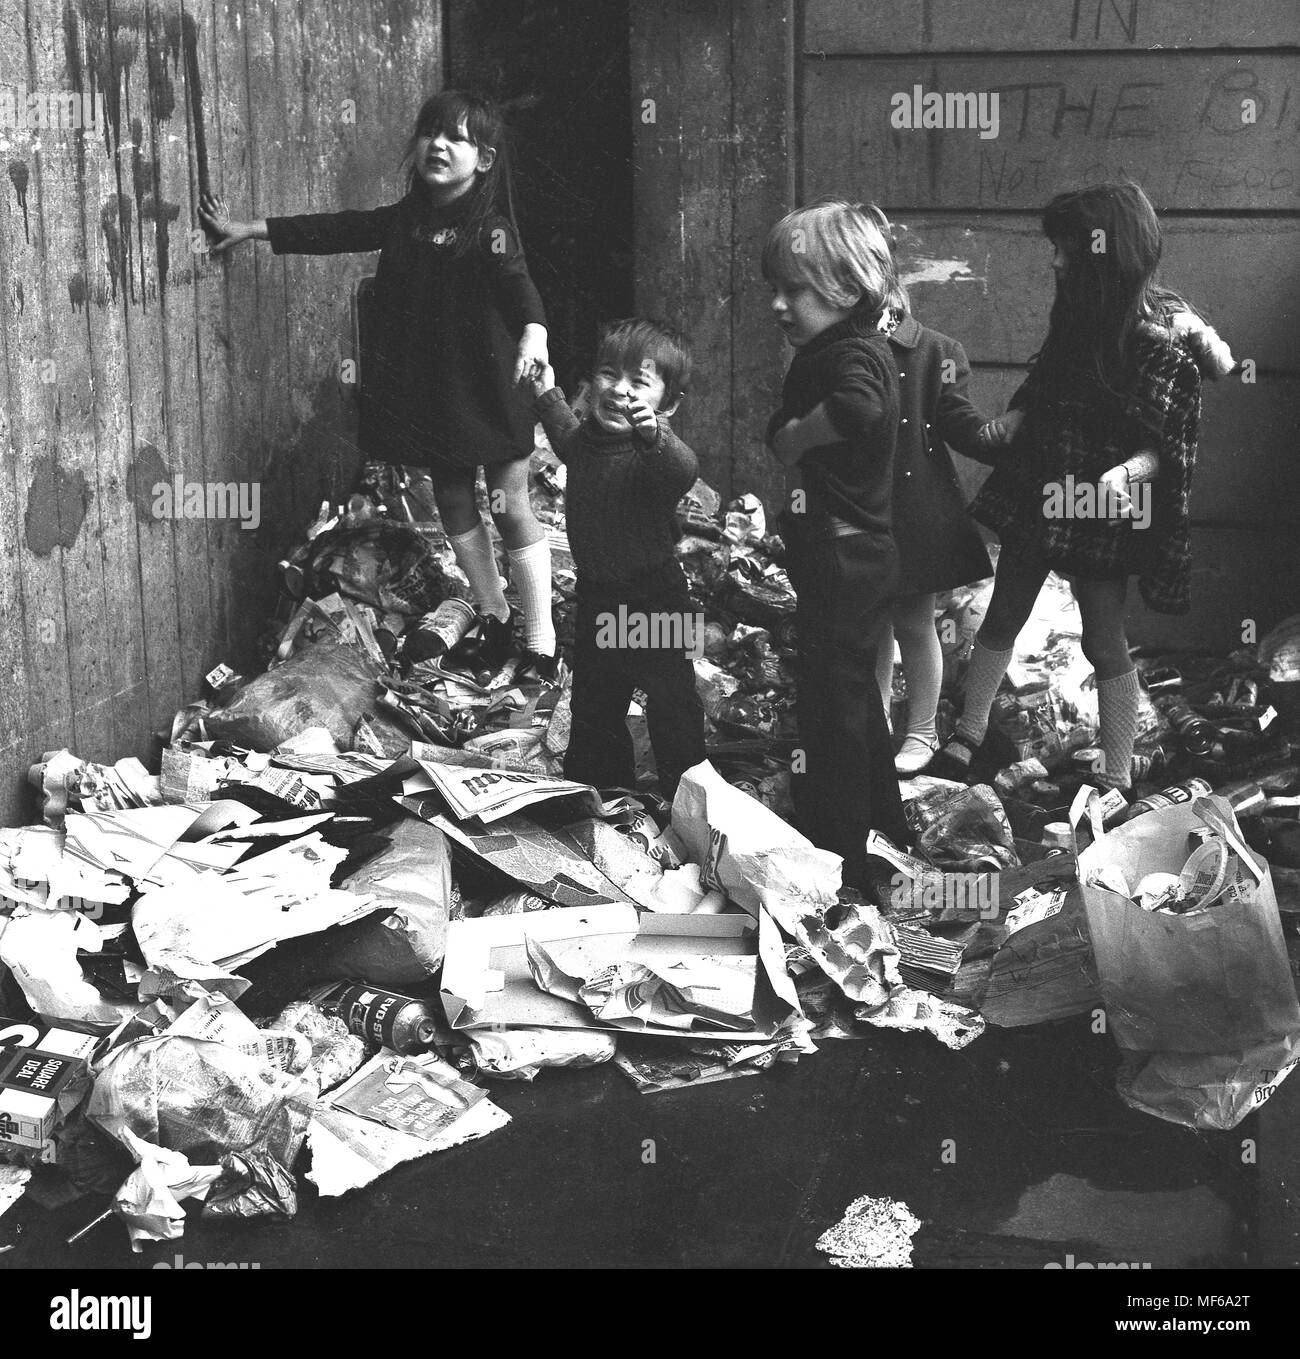 1972, historische Bild Kinder zusammen auf einem Haufen Hausmüll außerhalb, wo sie leben und spielen im Süden Londons. Der Junge ist gerade gestresst und unzufrieden. In den 1970er Jahren verbreiteten öffentlichen Sektor Arbeiter Streiks wurden ein gemeinsames Merkmal des britischen Lebens und weigern sich, war eines der Dinge, die nicht für die Wochen, die zu ernsten Umwelt und Fragen der öffentlichen Gesundheit gesammelt und für Kinder Gefahr beim Spielen im Freien. Stockfoto